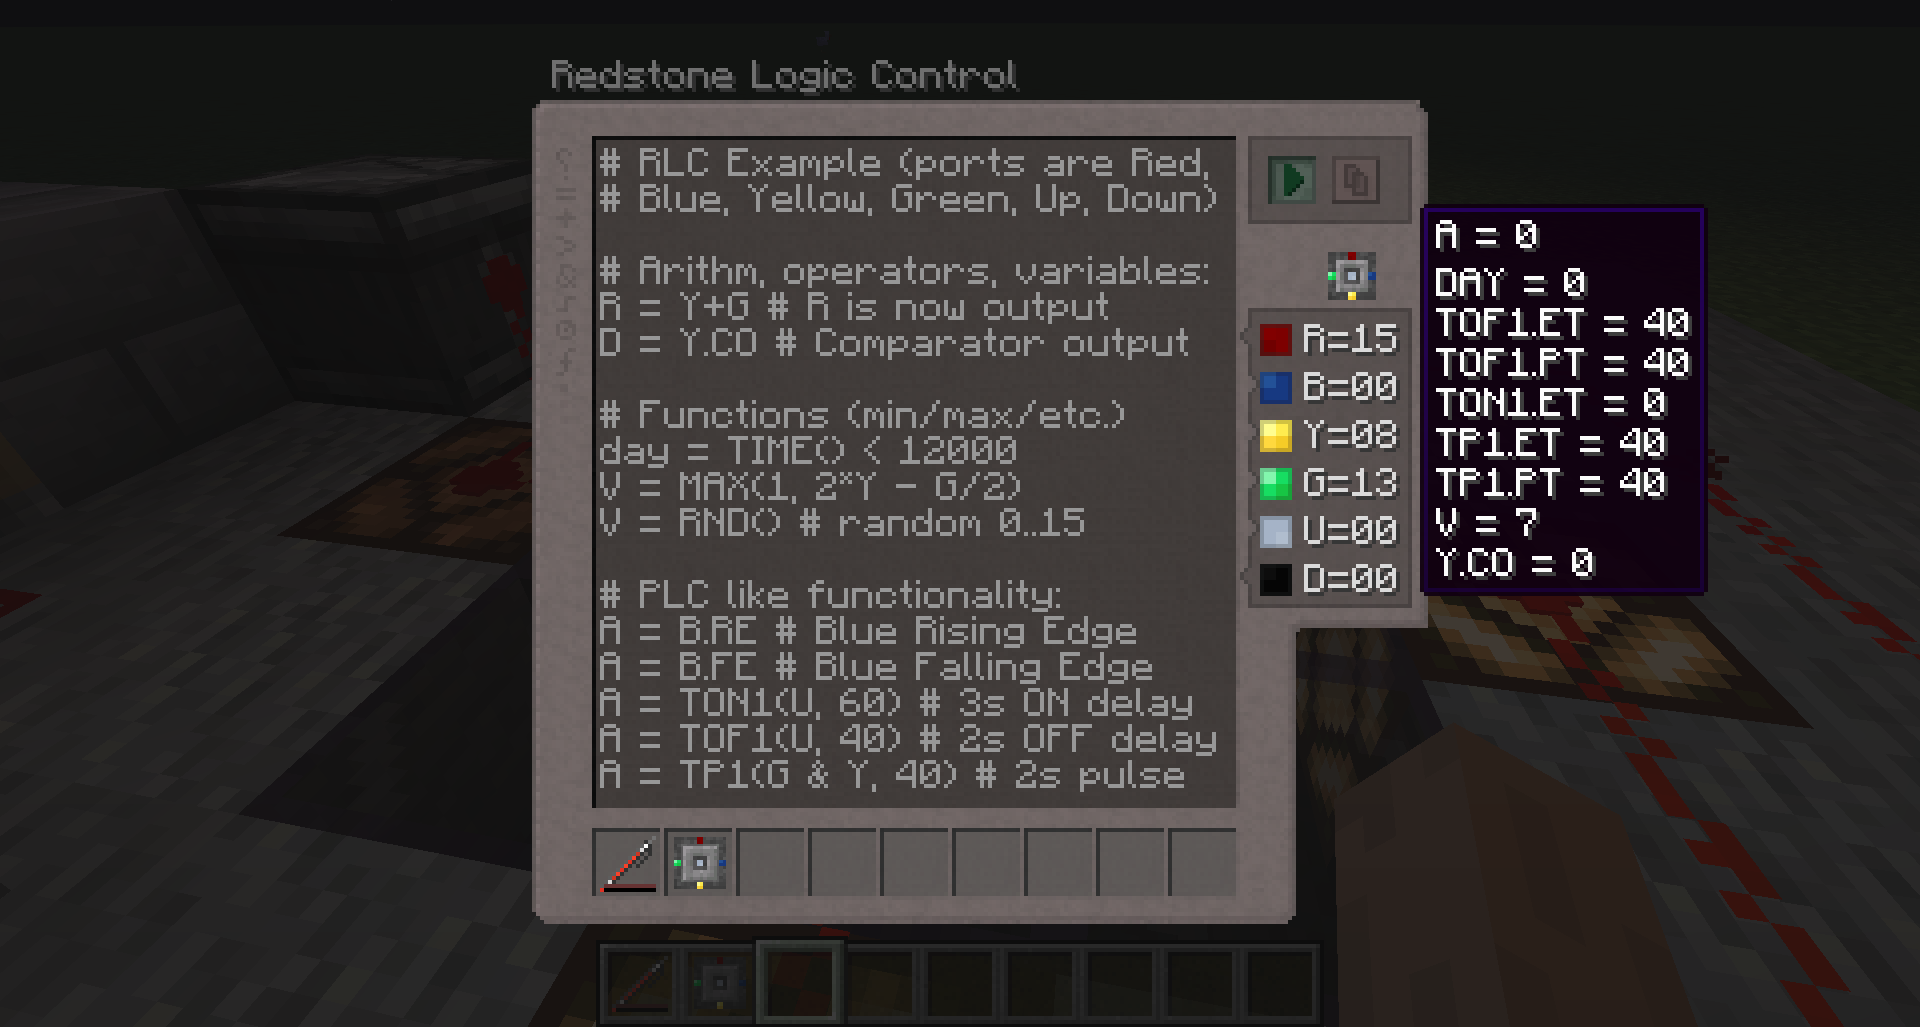 Redstone Logic Controller - GUI